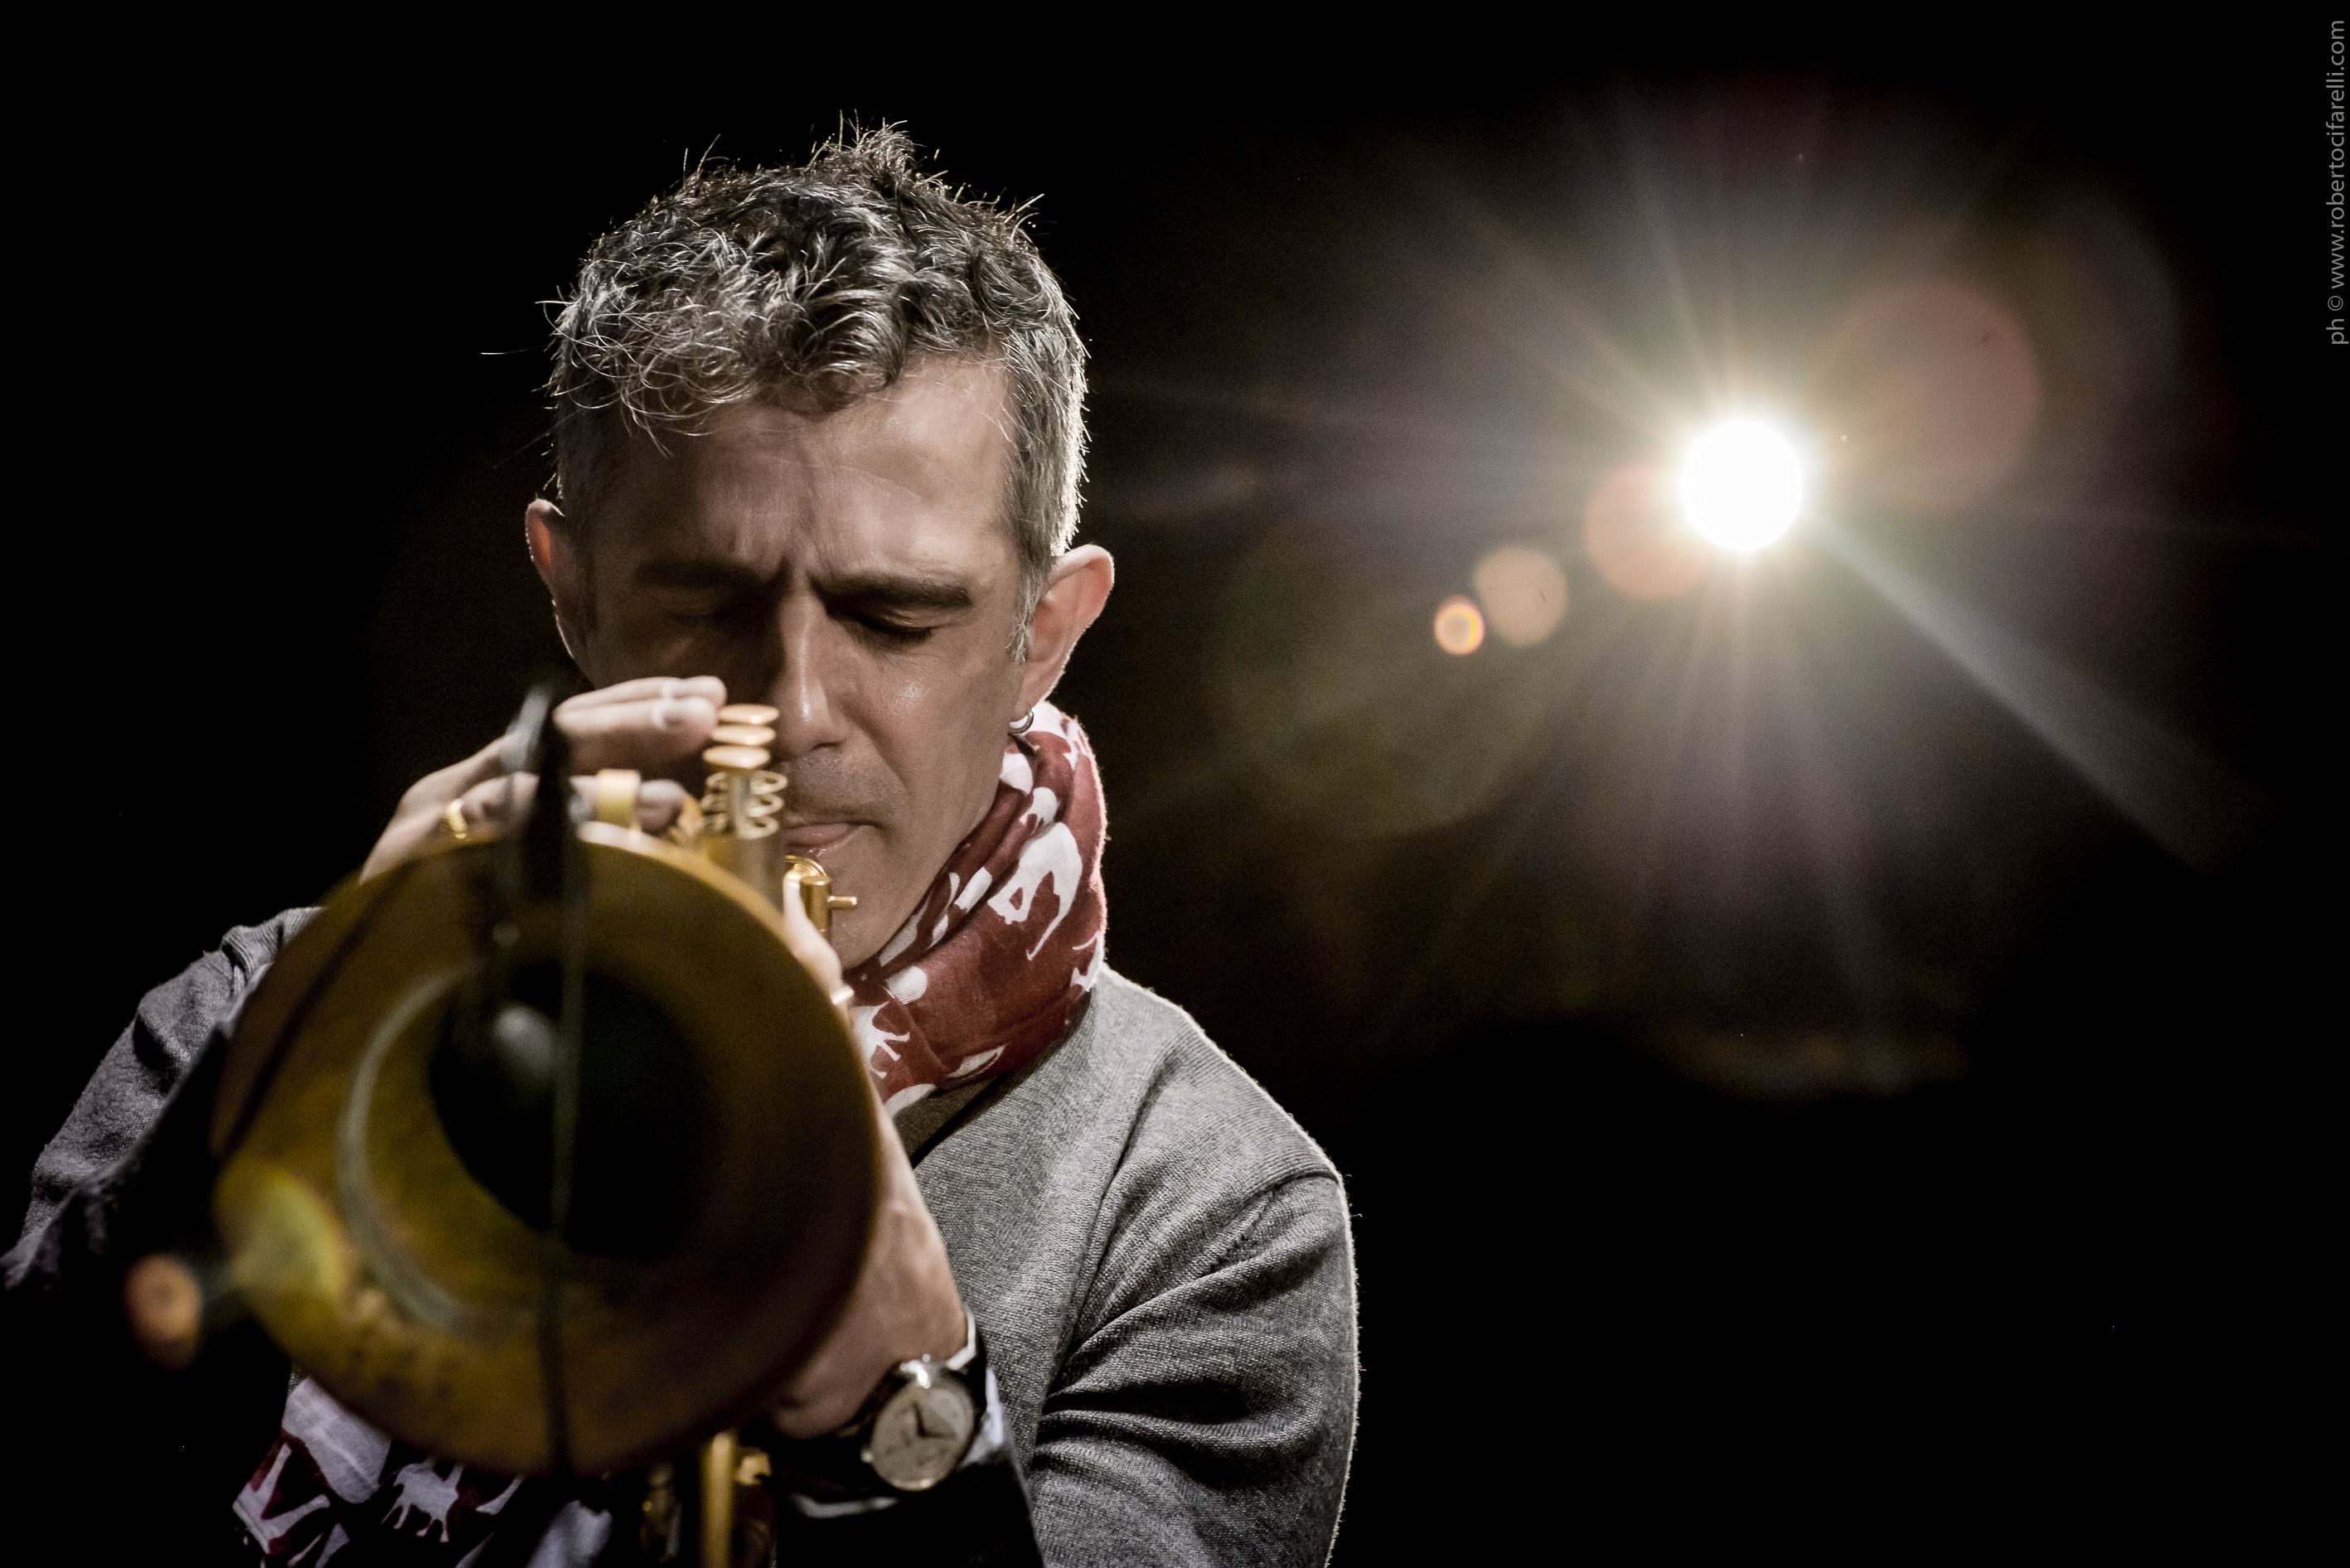 il grande trombettista jazz, Paolo Fresu, 63 anni, genius loci del paese sardo di Berchidda che dal 1988 ospita il Festival "Jazz in Time"